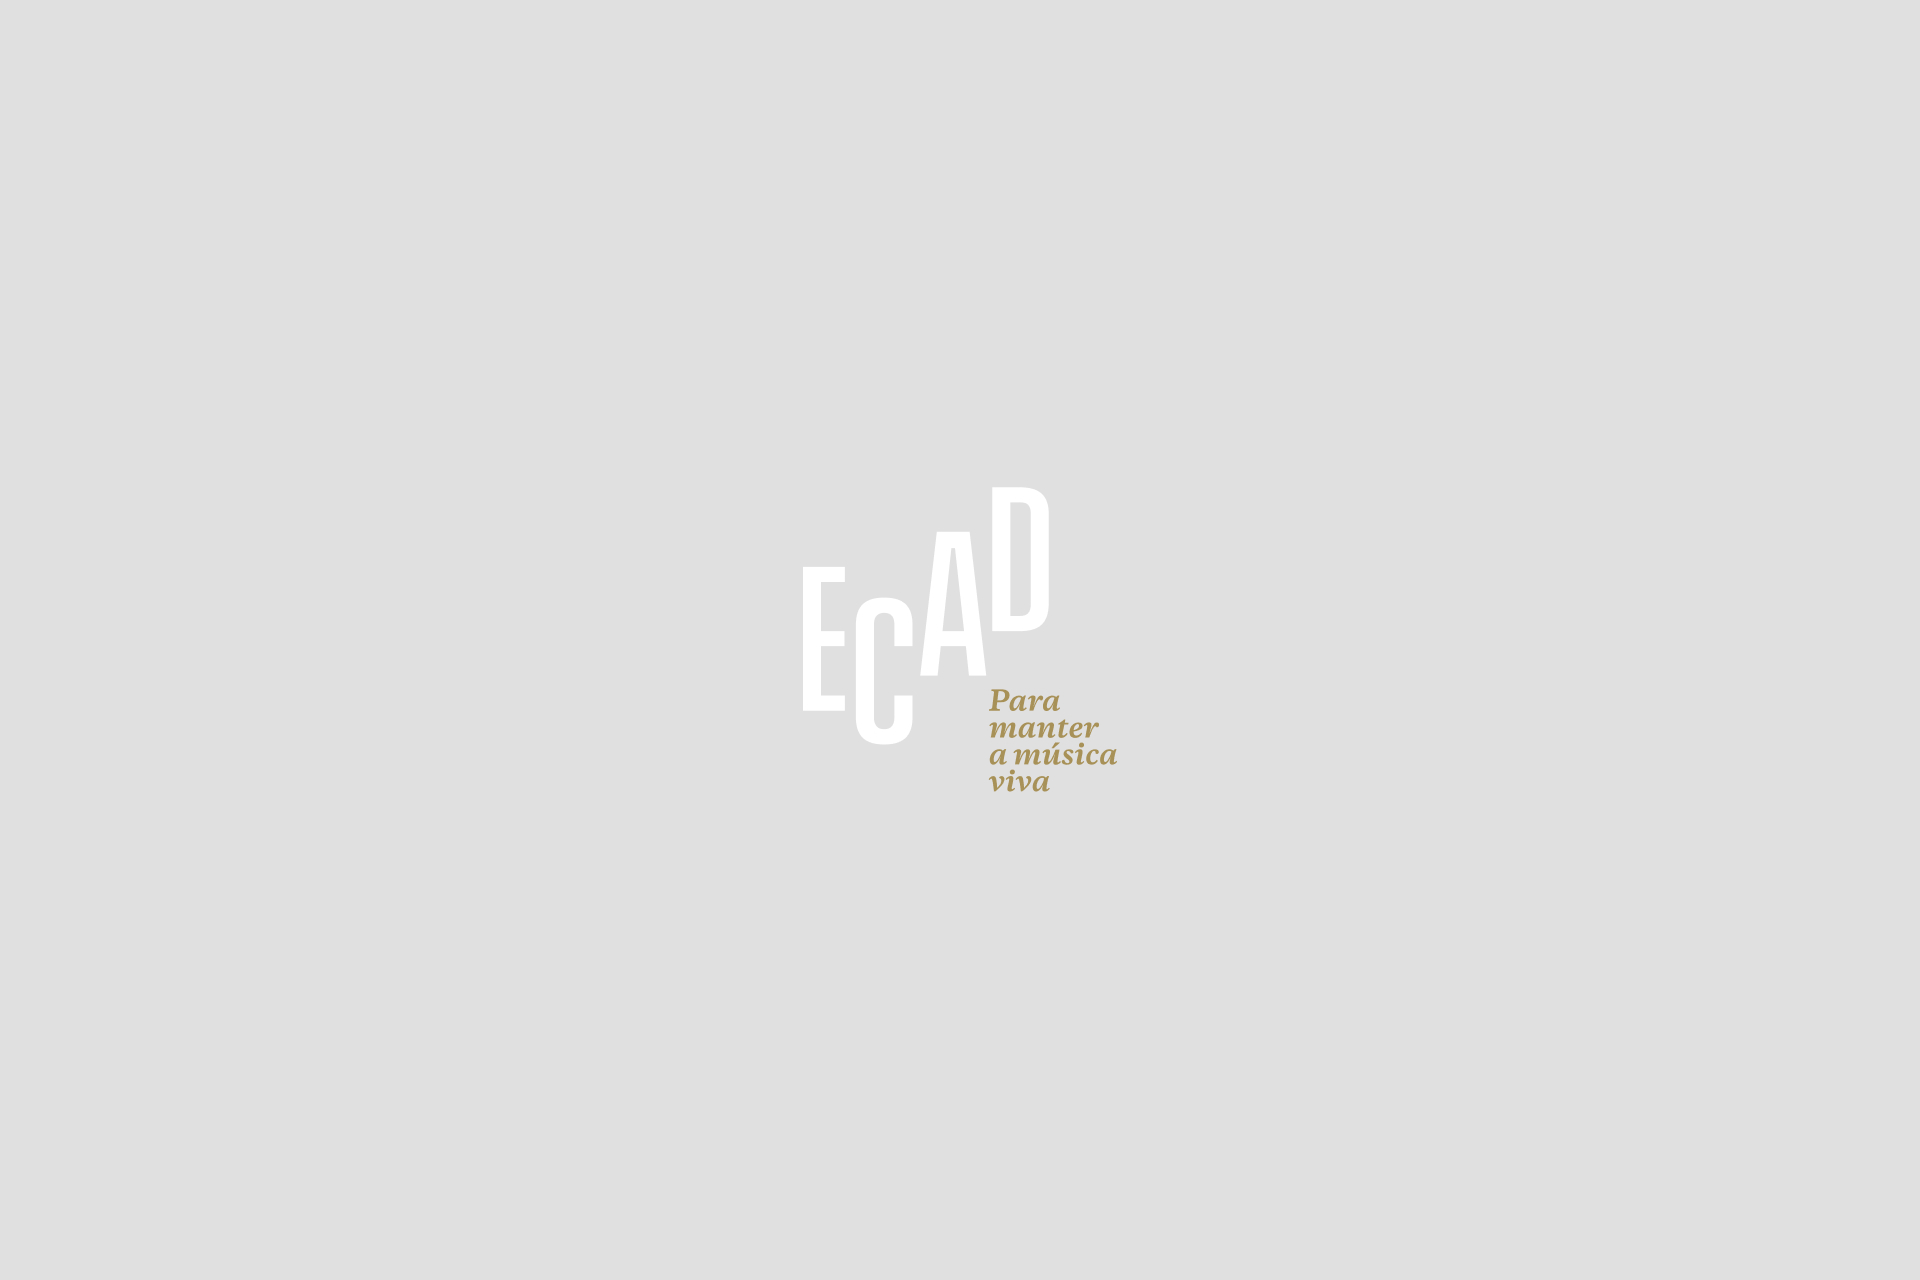 Ecad distribui mais de R$ 470 milhões em direitos autorais de execução pública musical em 2012